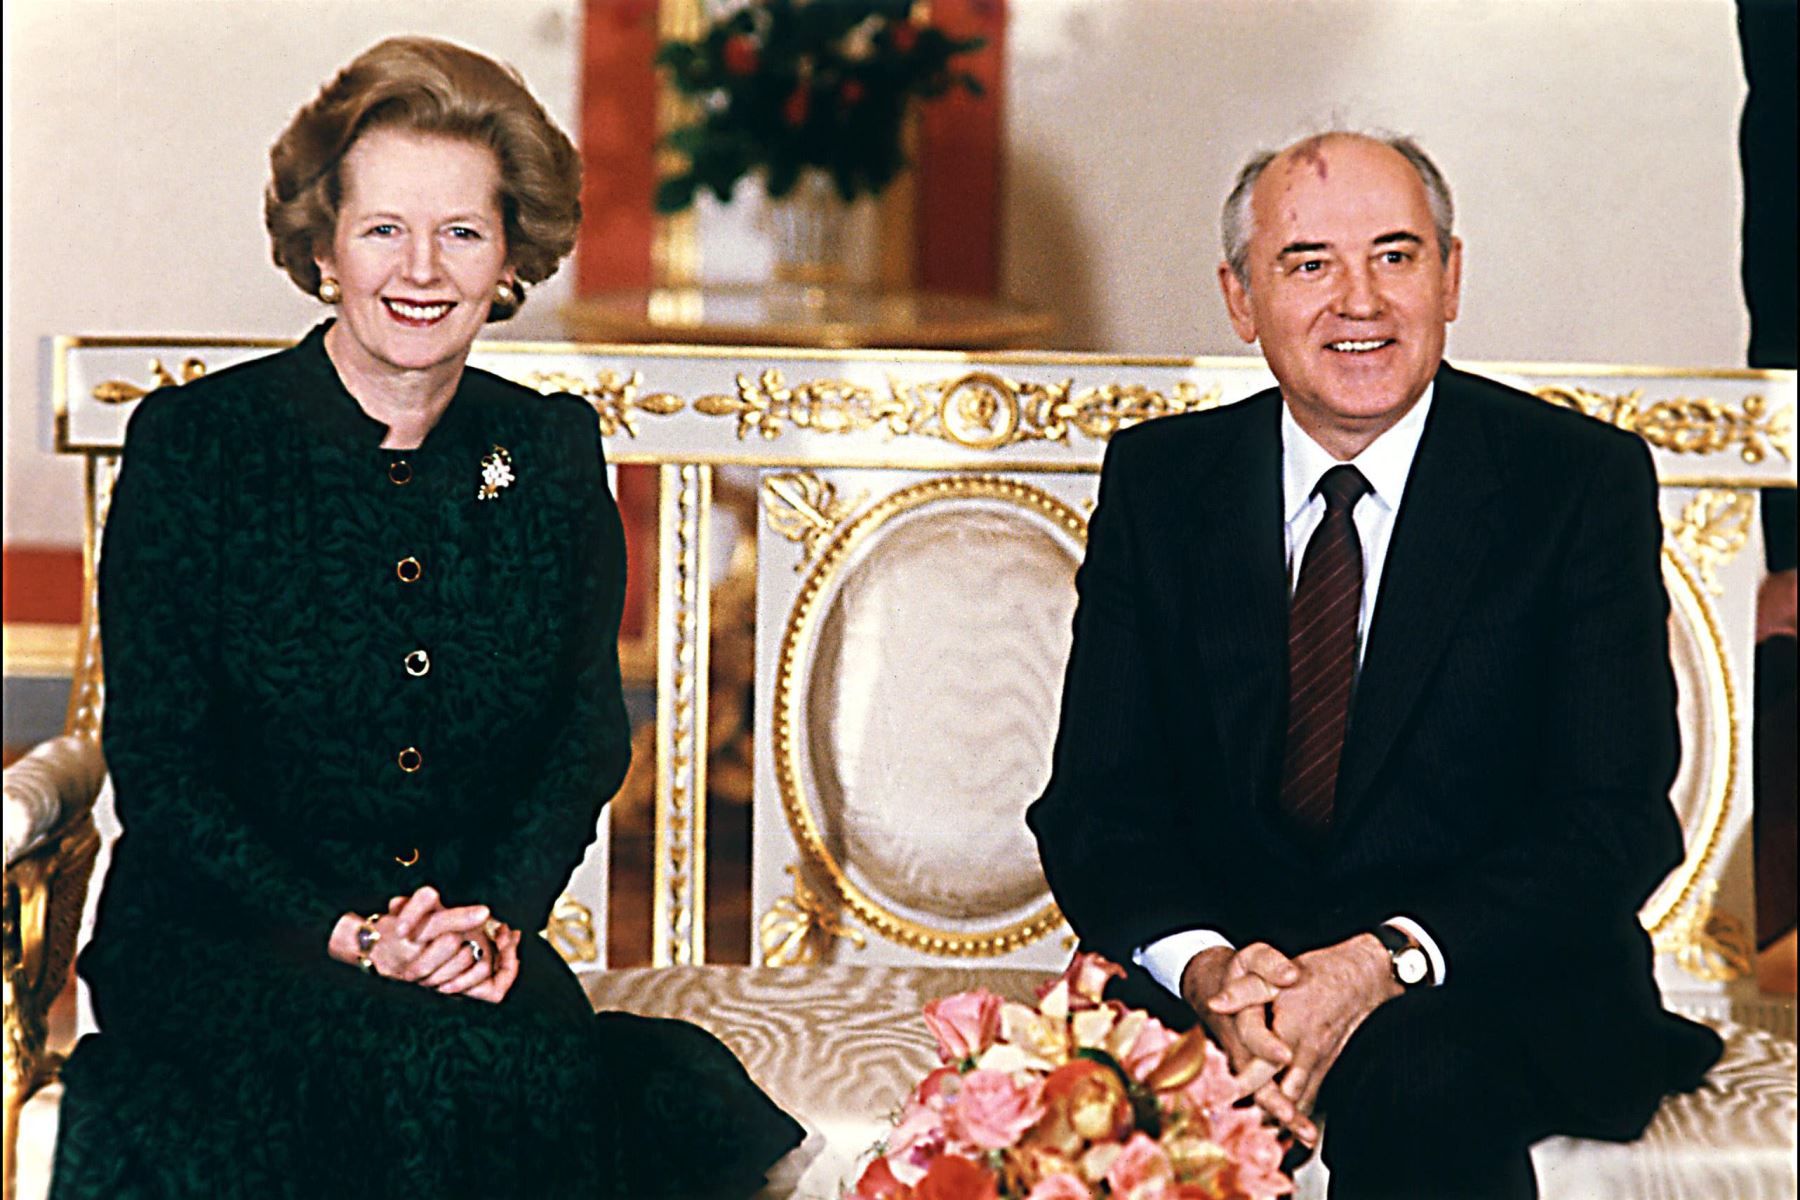 La primera ministra británica Margaret Thatcher , en imagen  del 30 de marzo de 1987 con el líder soviético Mikhail Gorbachev al comienzo de las conversaciones en el Kremlin en Moscú.
Foto: AFP